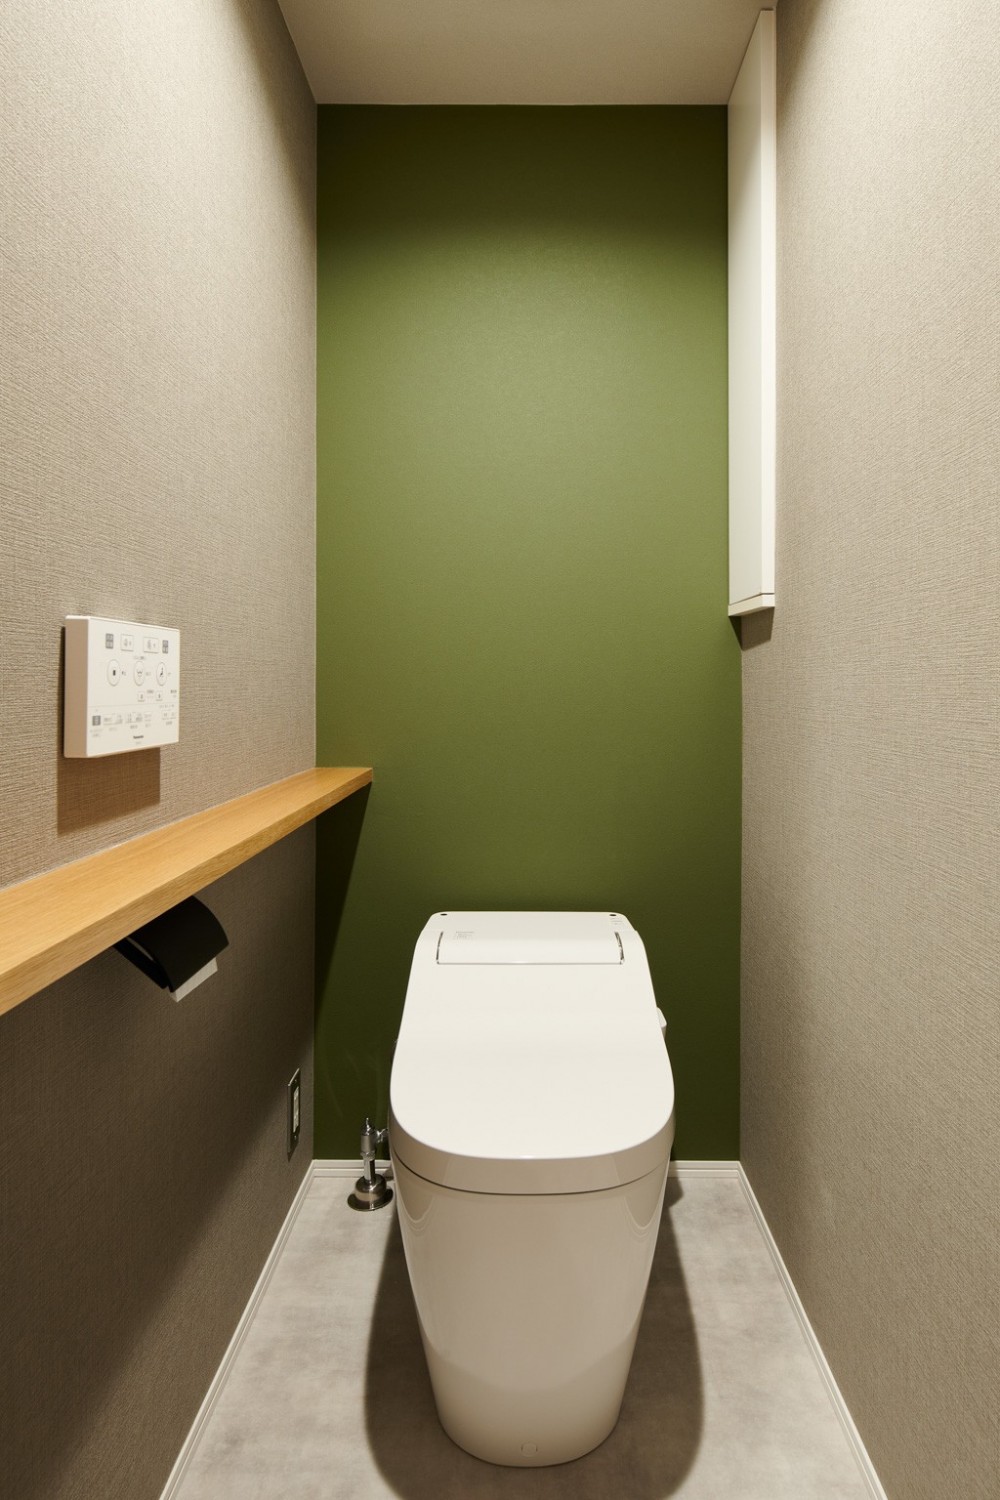 複数のタイルの使い×色味を統一したシックなリノベーション (トイレ)